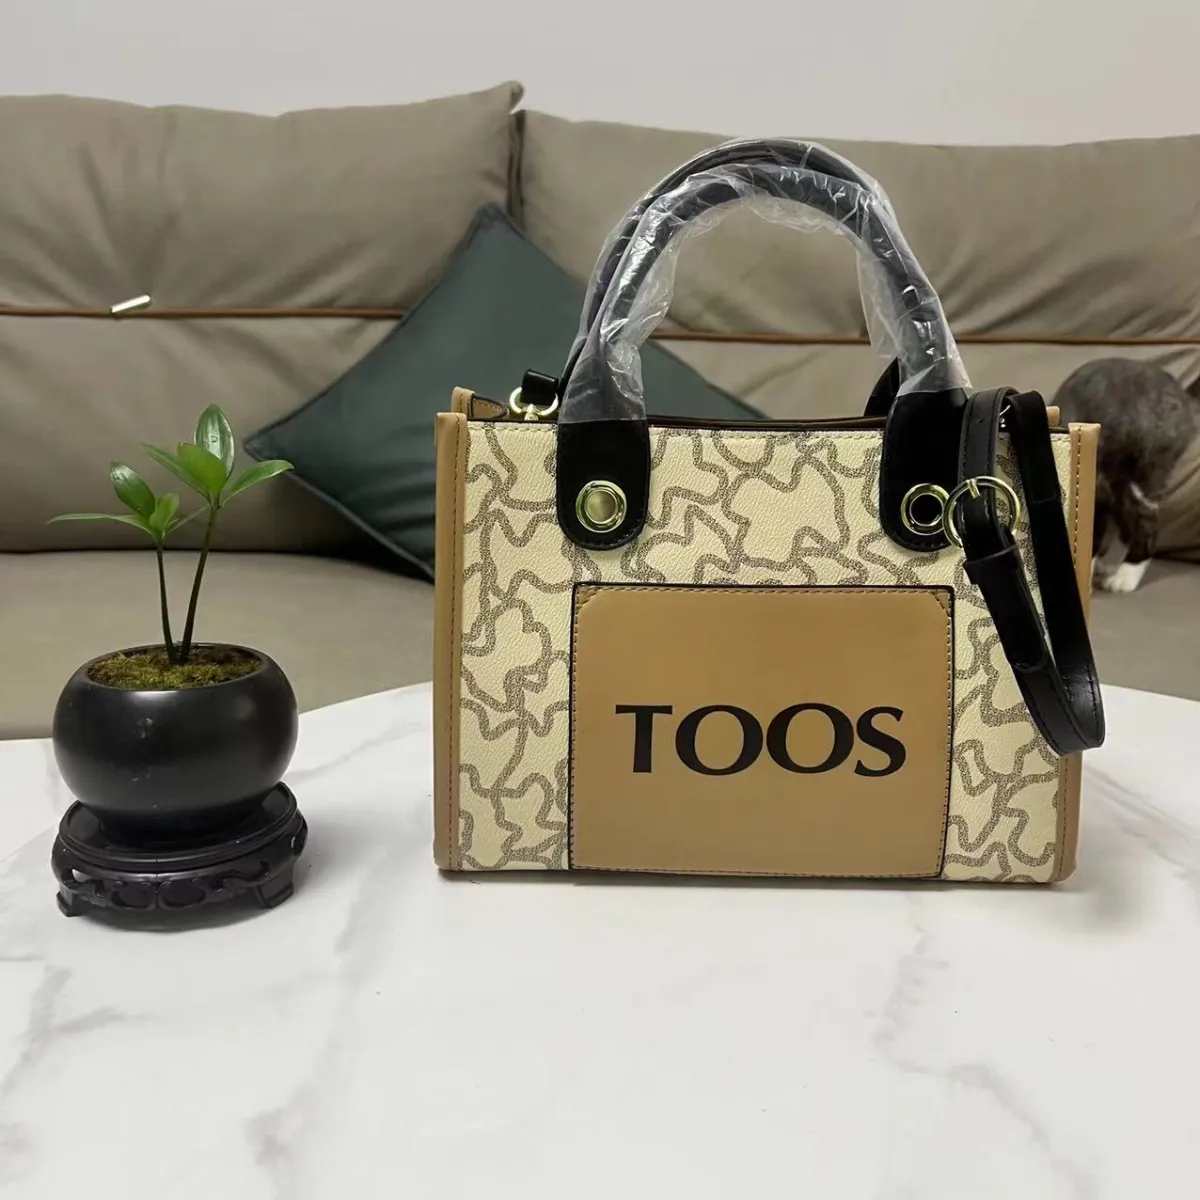 Tygväskan Tous Luxury Shopping Bag designer Bag Högkvalitativ mode vävd för sommar svart aprikos utomhus resor stor kapacitet handväska crossbody kuvertväskor